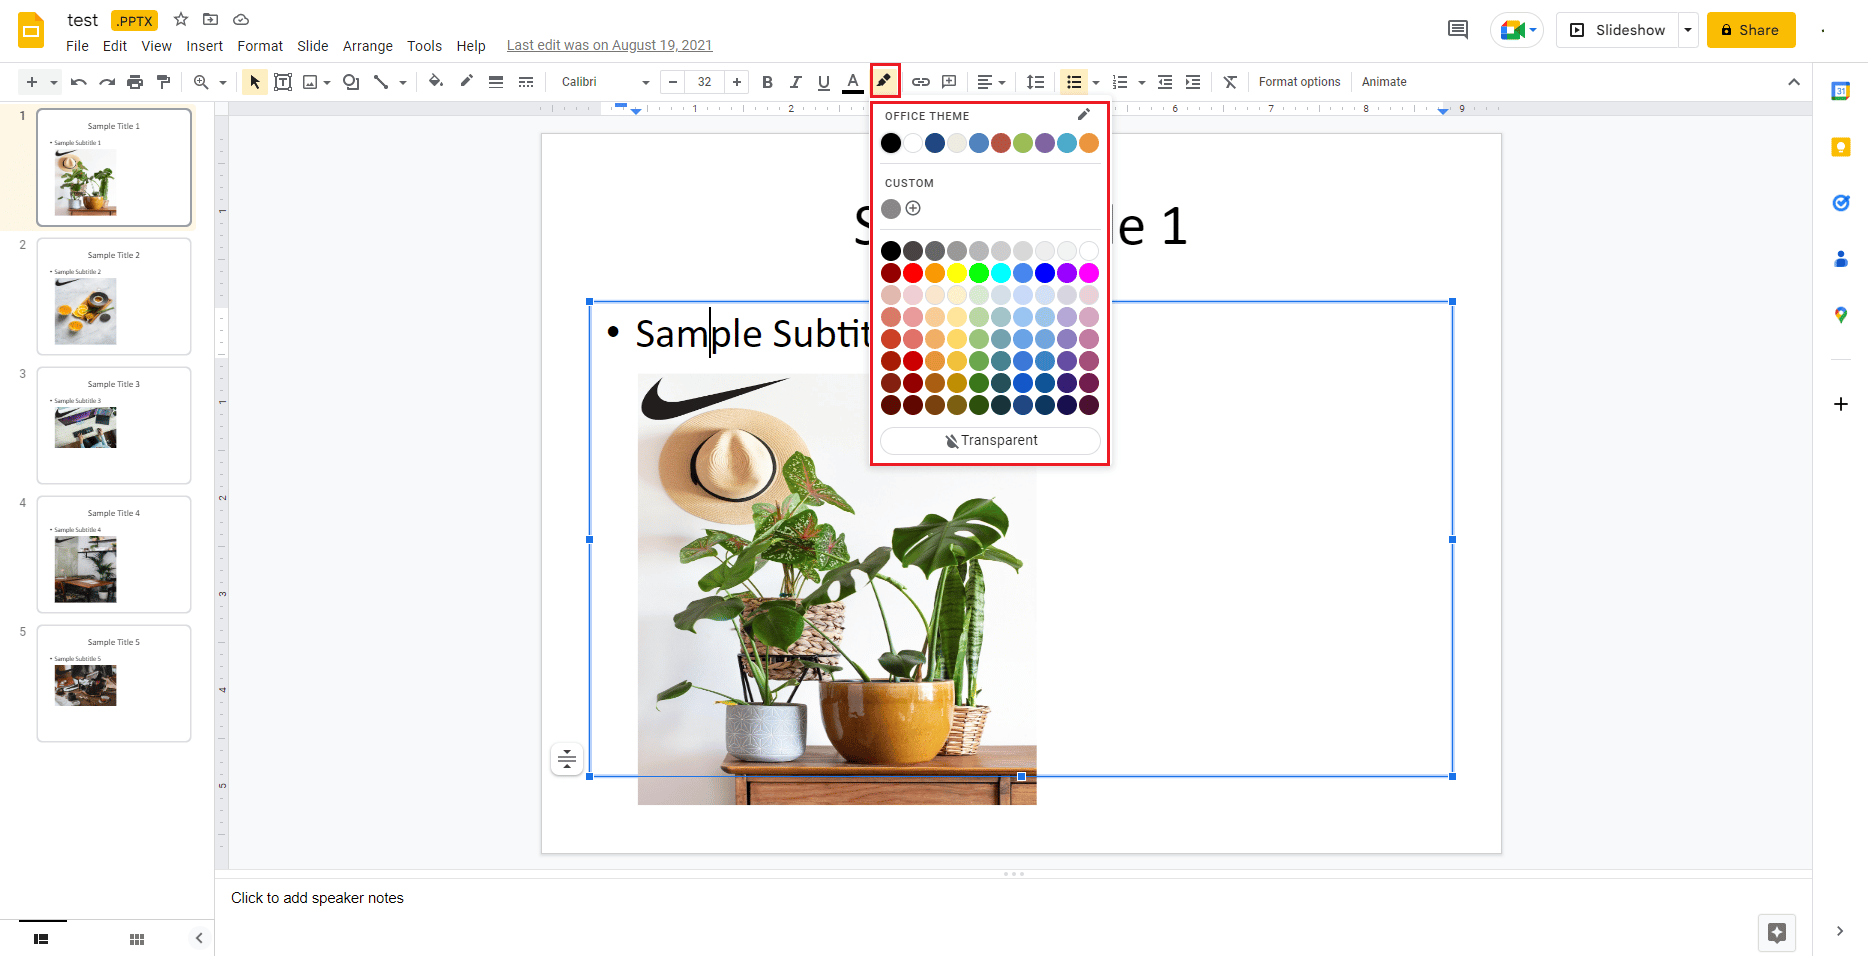 fai clic sull'icona della matita e scegli un colore per evidenziare il testo